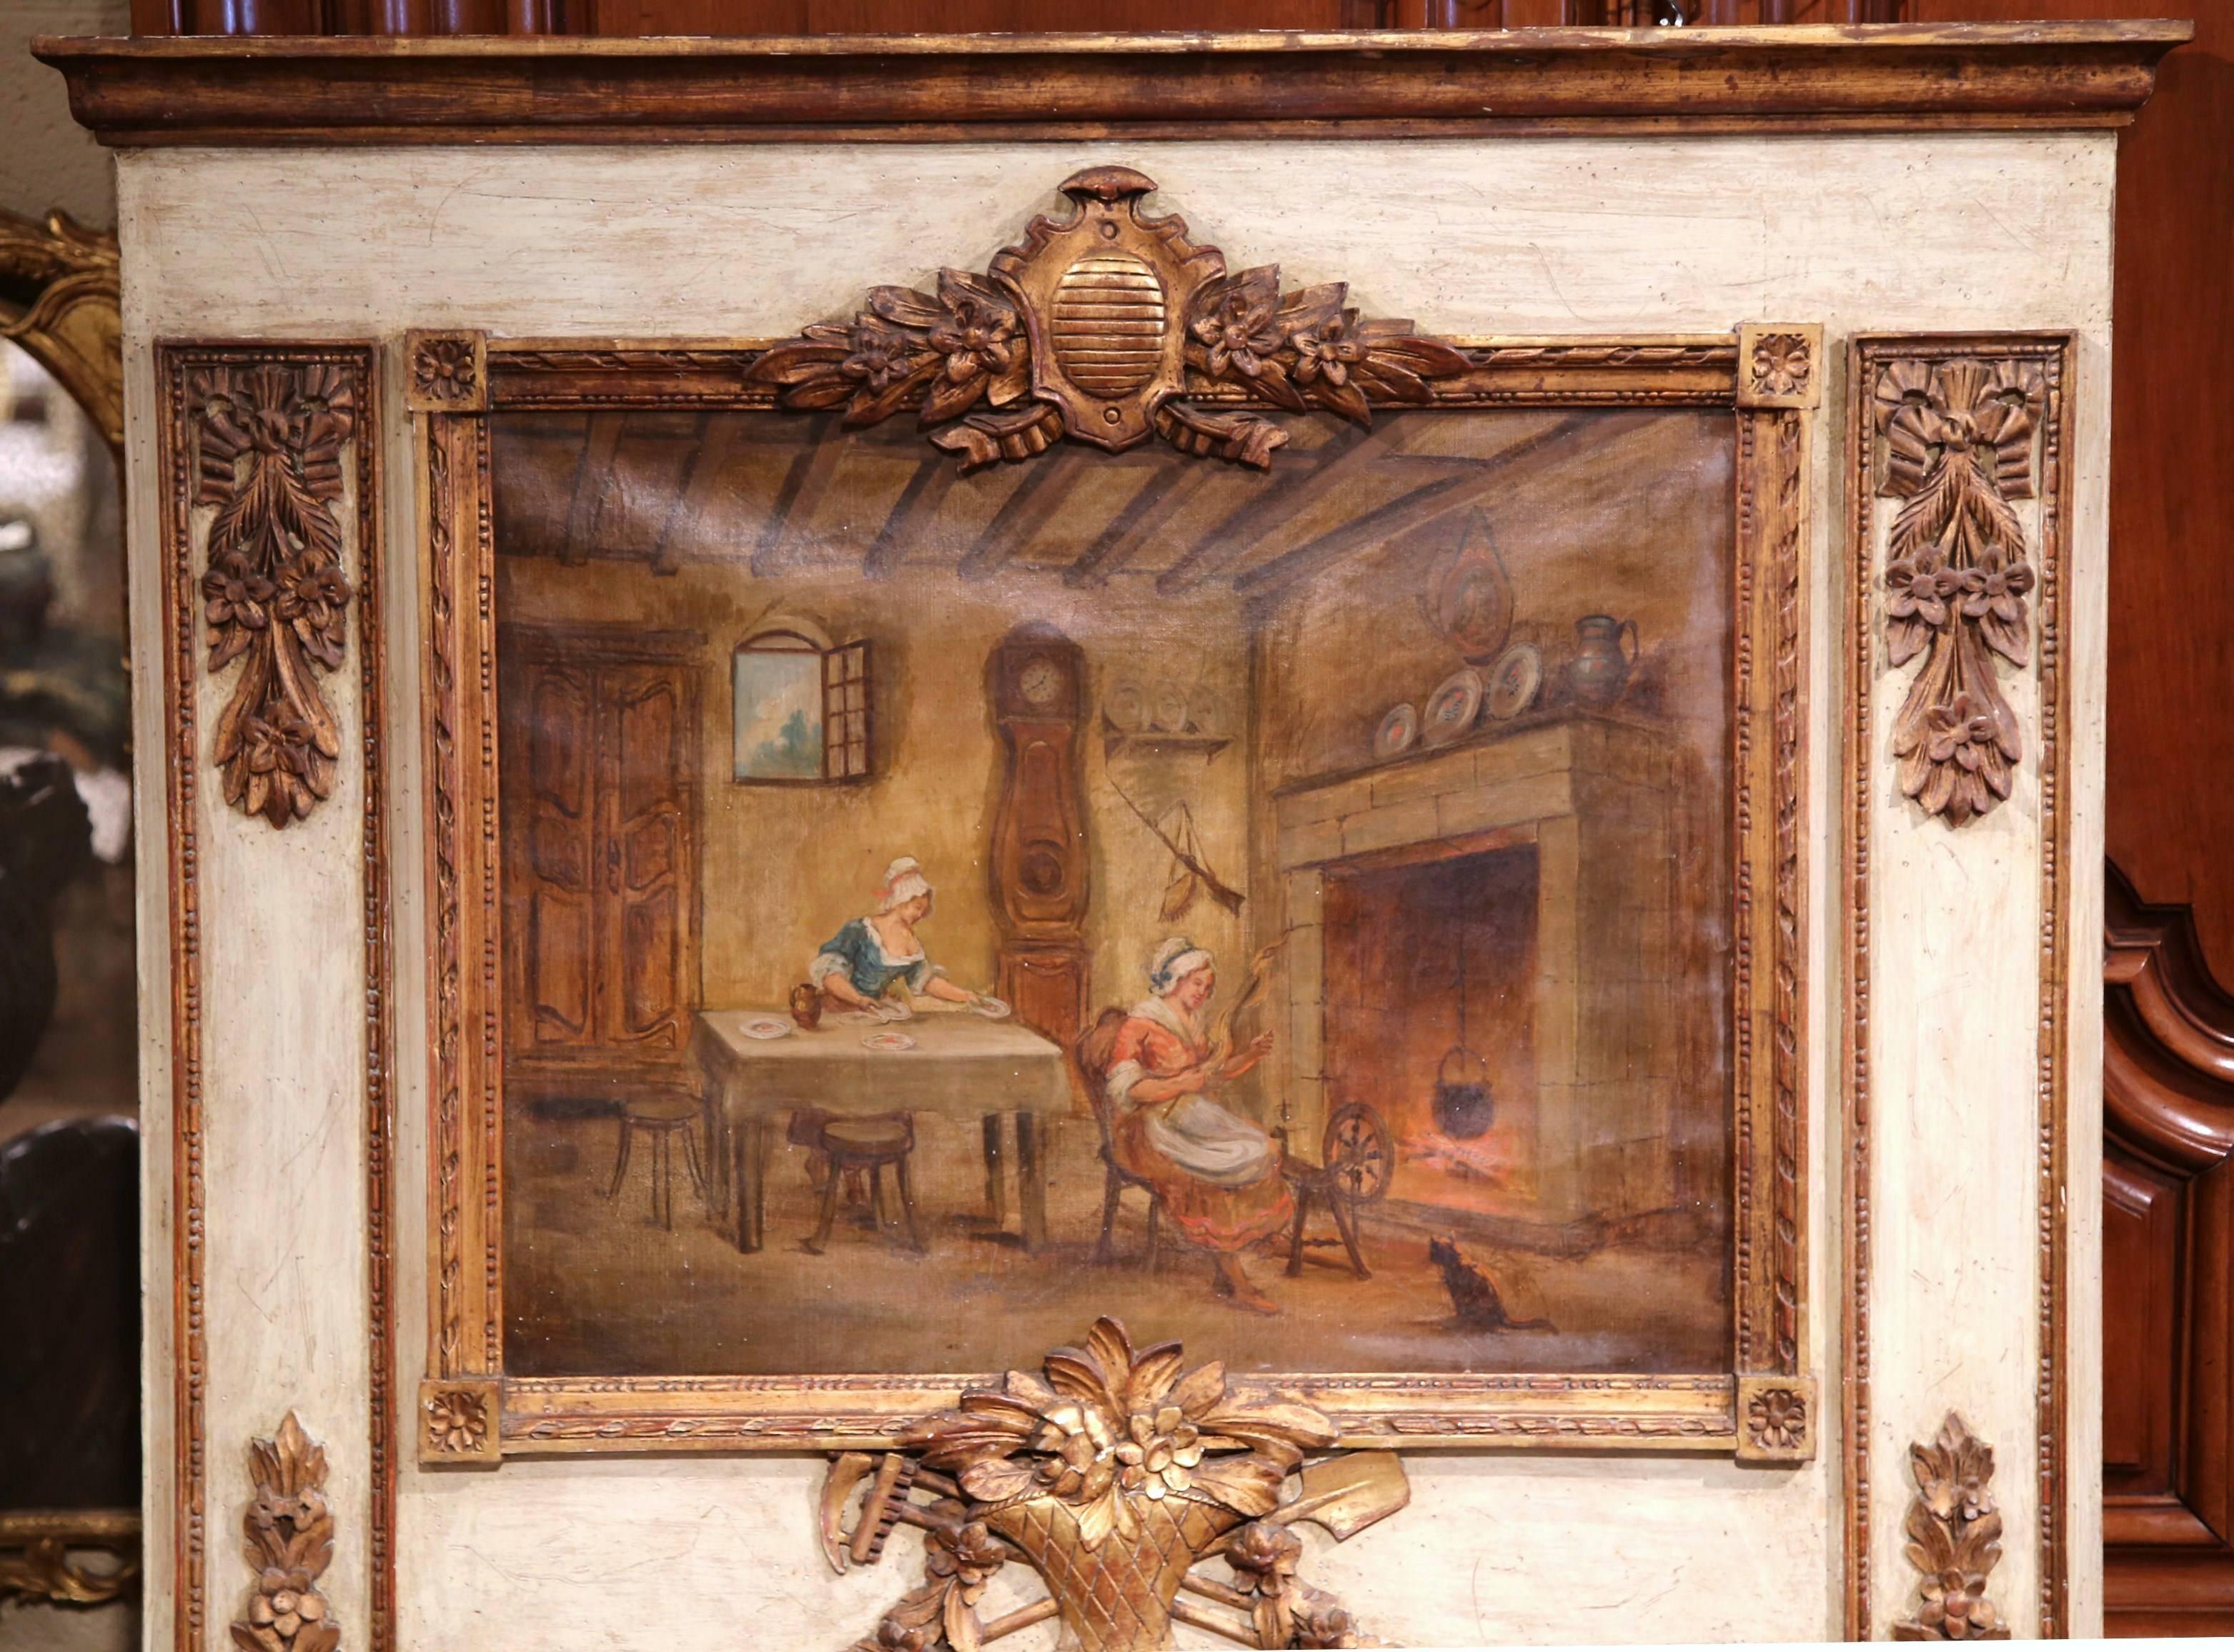 Cet élégant trumeau antique sculpté a été fabriqué en France vers 1880. La toile peinte à la main représente une scène d'intérieur avec deux femmes au travail dans un décor typique de la campagne française, une grande horloge grand-père